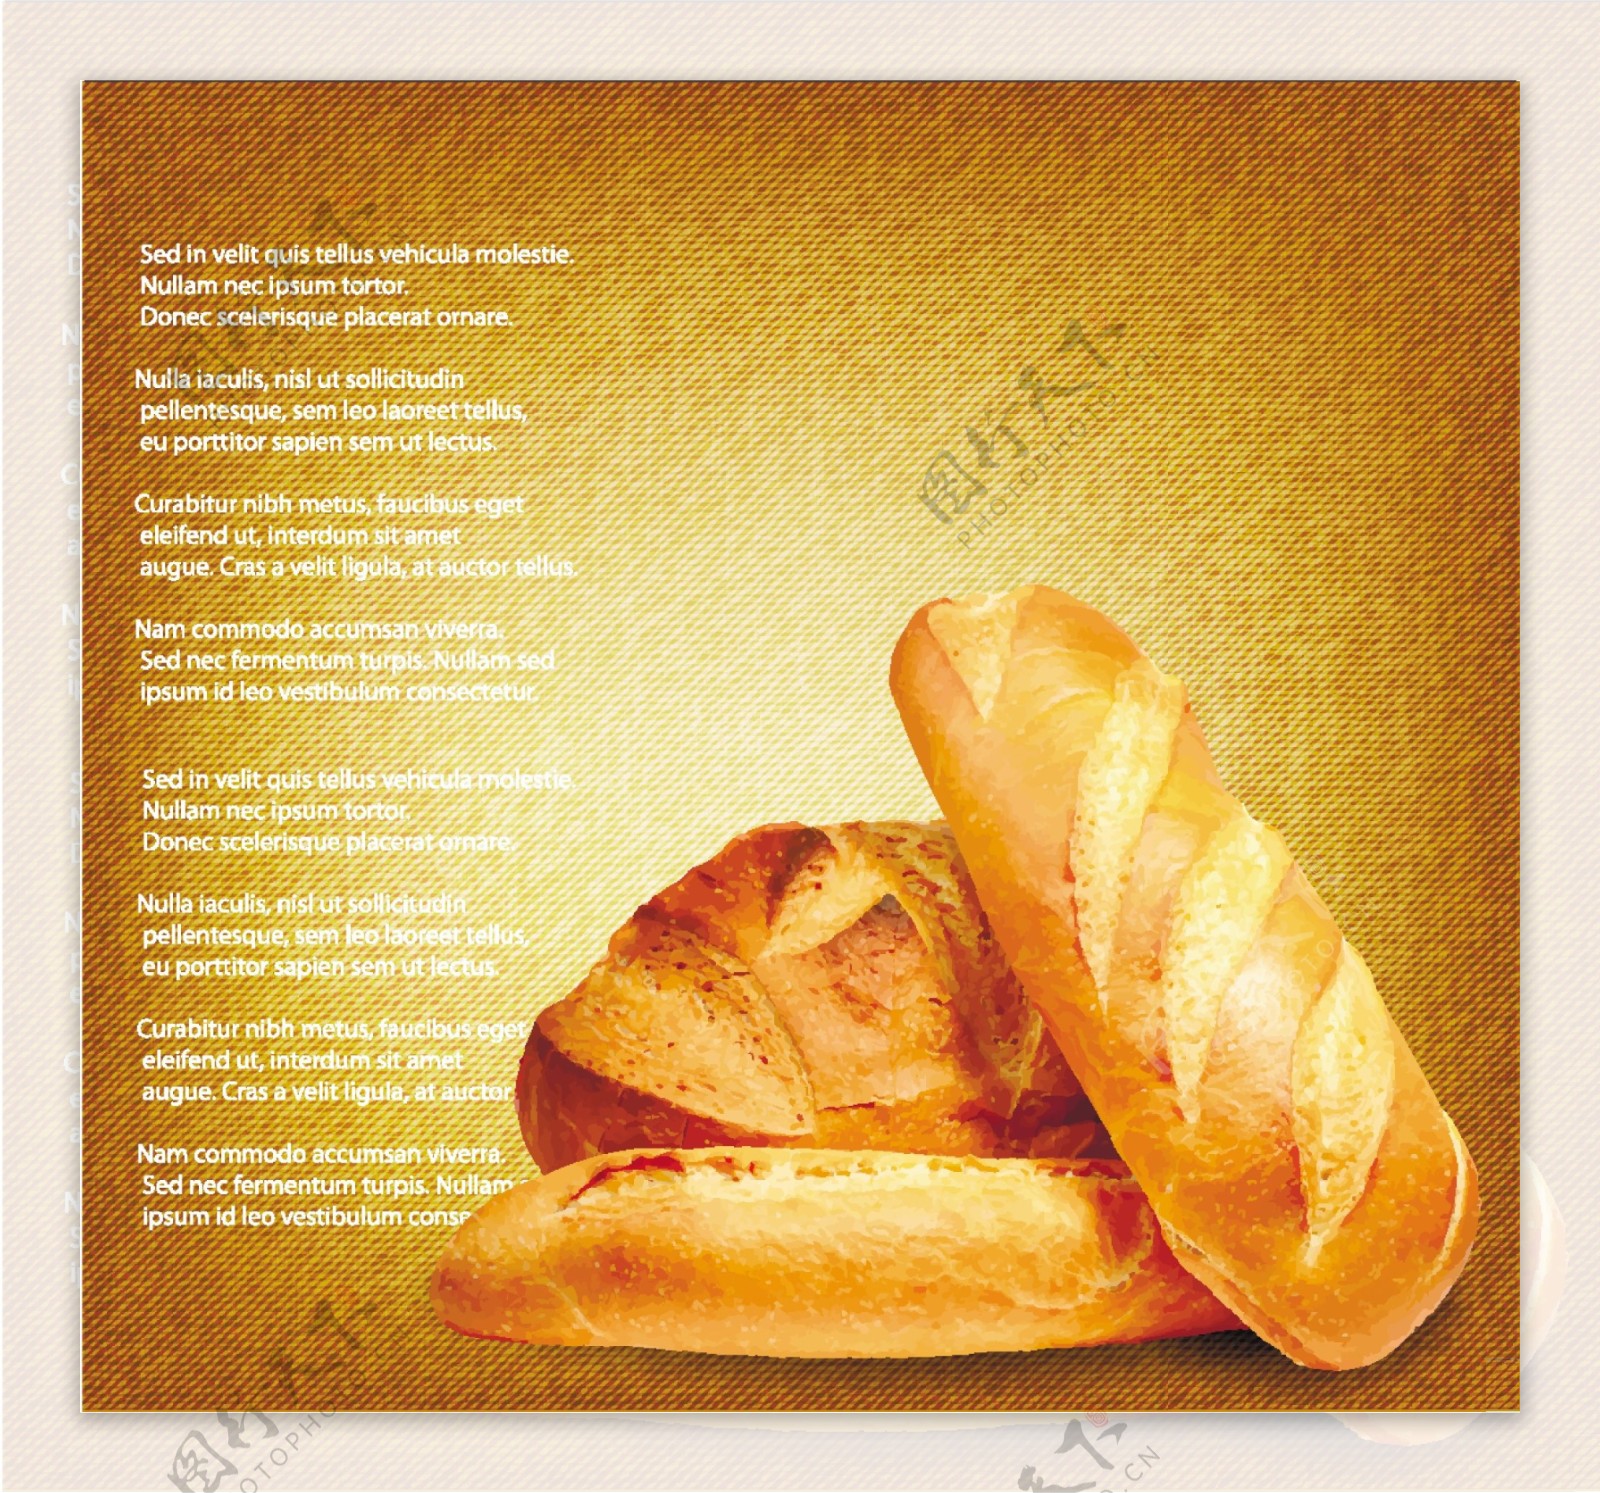 小麦与全麦面包